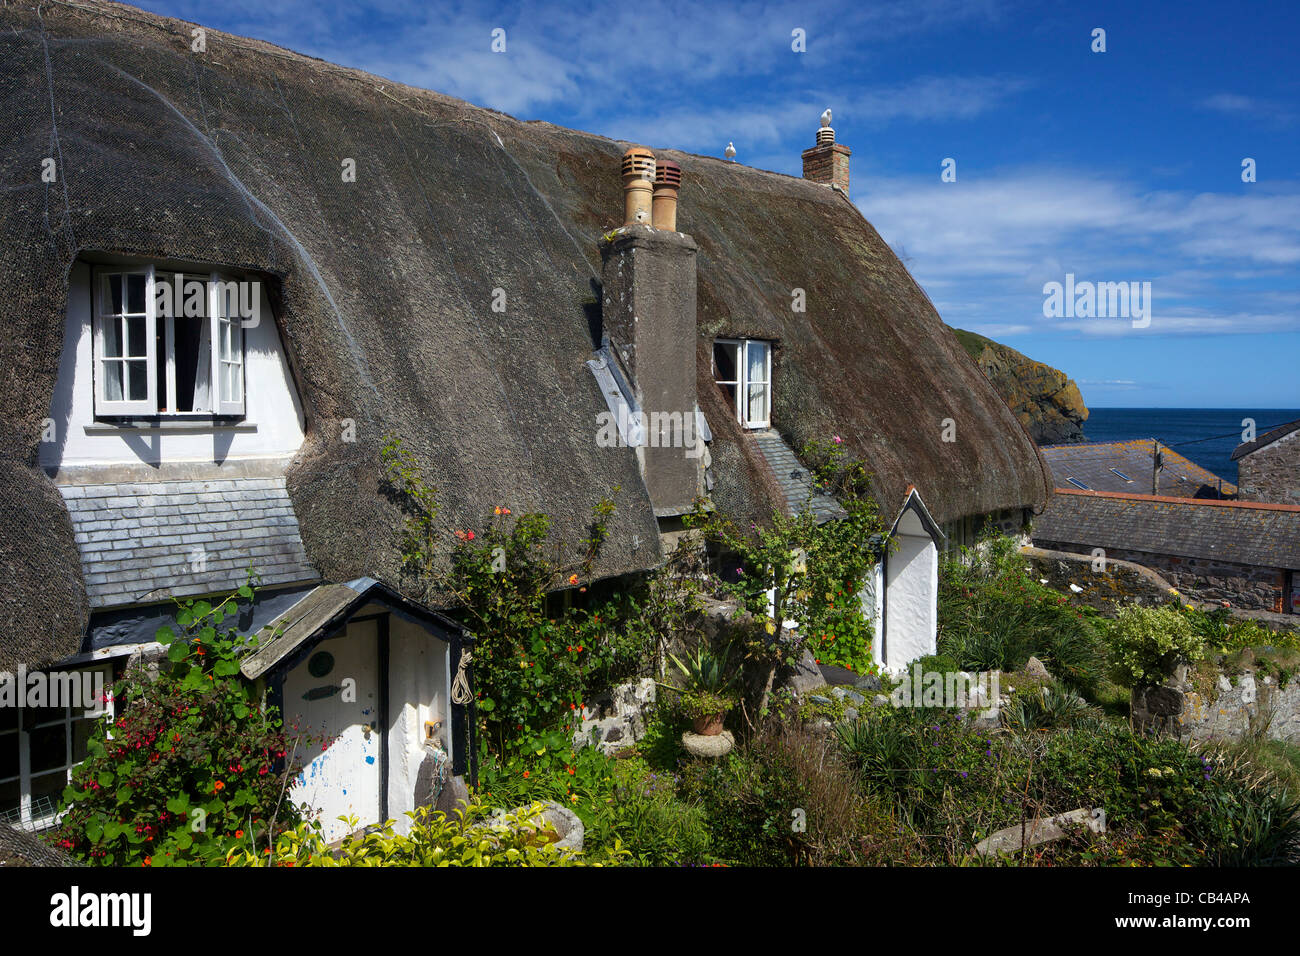 Strohgedeckten Hütten am Cadgwith, Halbinsel Lizard, Cornwall, Südwestengland, UK, Vereinigtes Königreich, GB, Großbritannien, Stockfoto